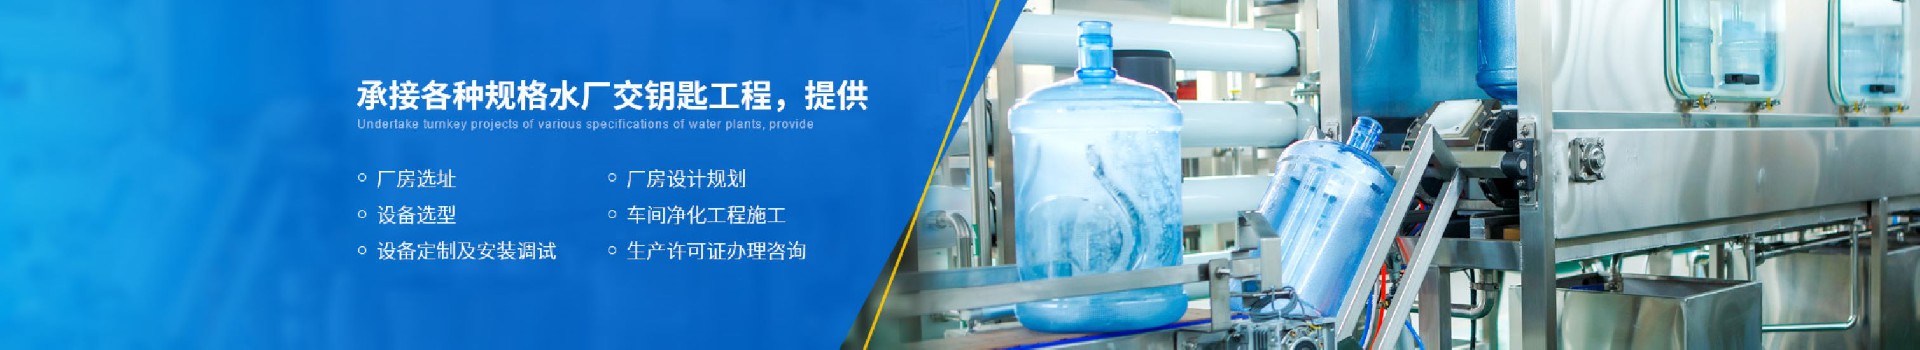 武汉川谷环保科技有限公司部门职责-武汉纯水设备厂家 (PC+WAP)-纯净水设备生产销售